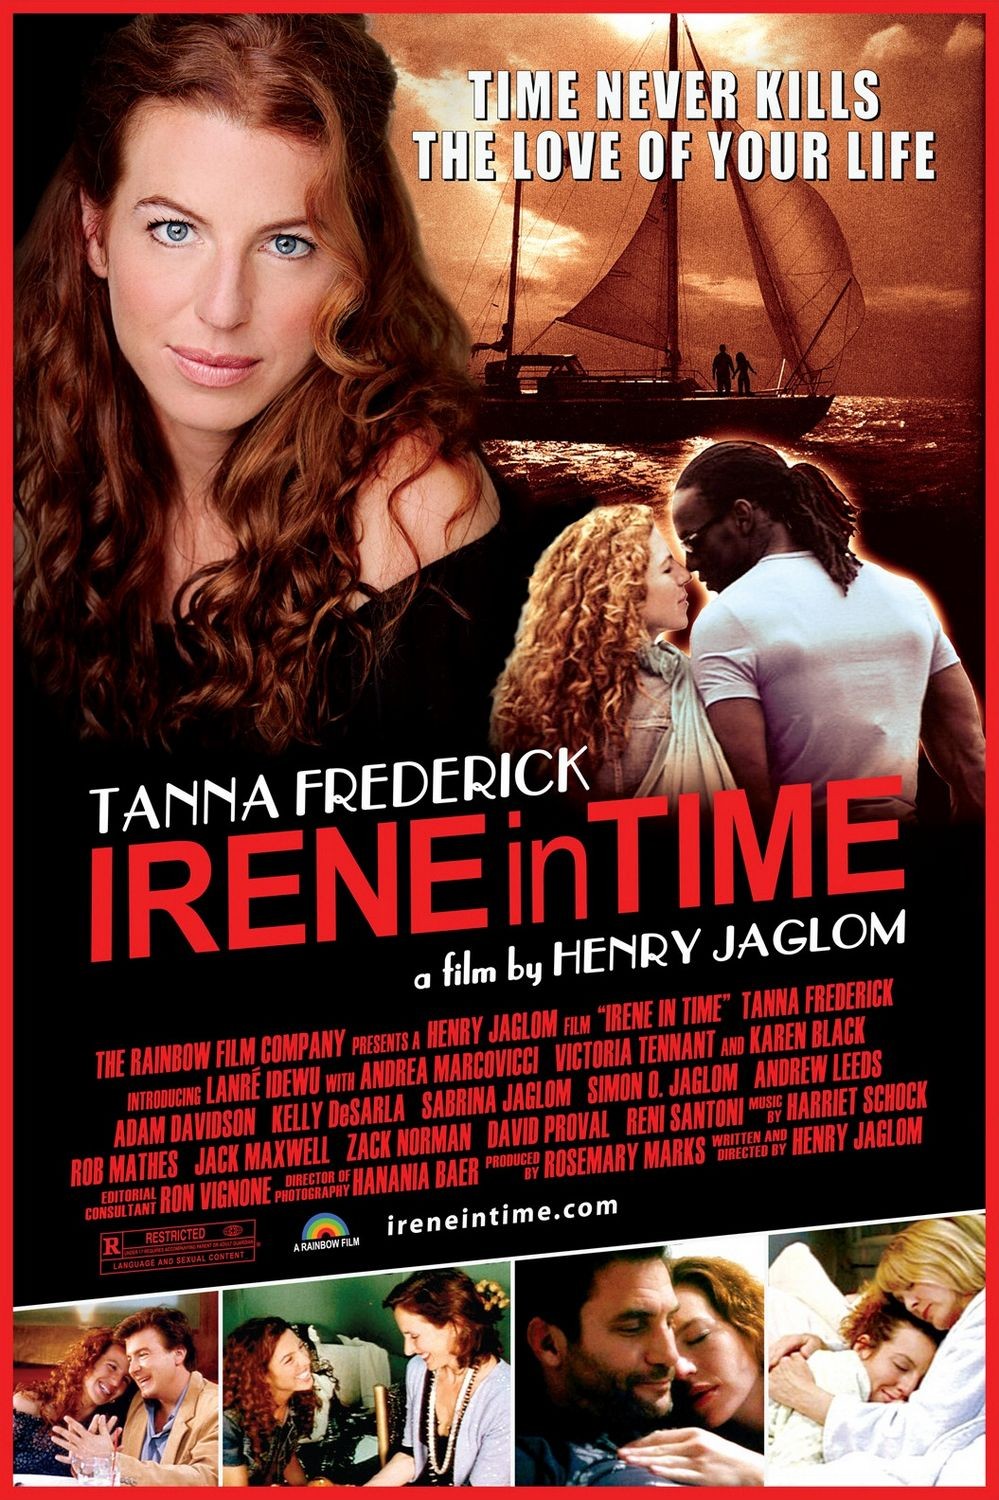 Ирен во времени / Irene in Time (2009) отзывы. Рецензии. Новости кино. Актеры фильма Ирен во времени. Отзывы о фильме Ирен во времени